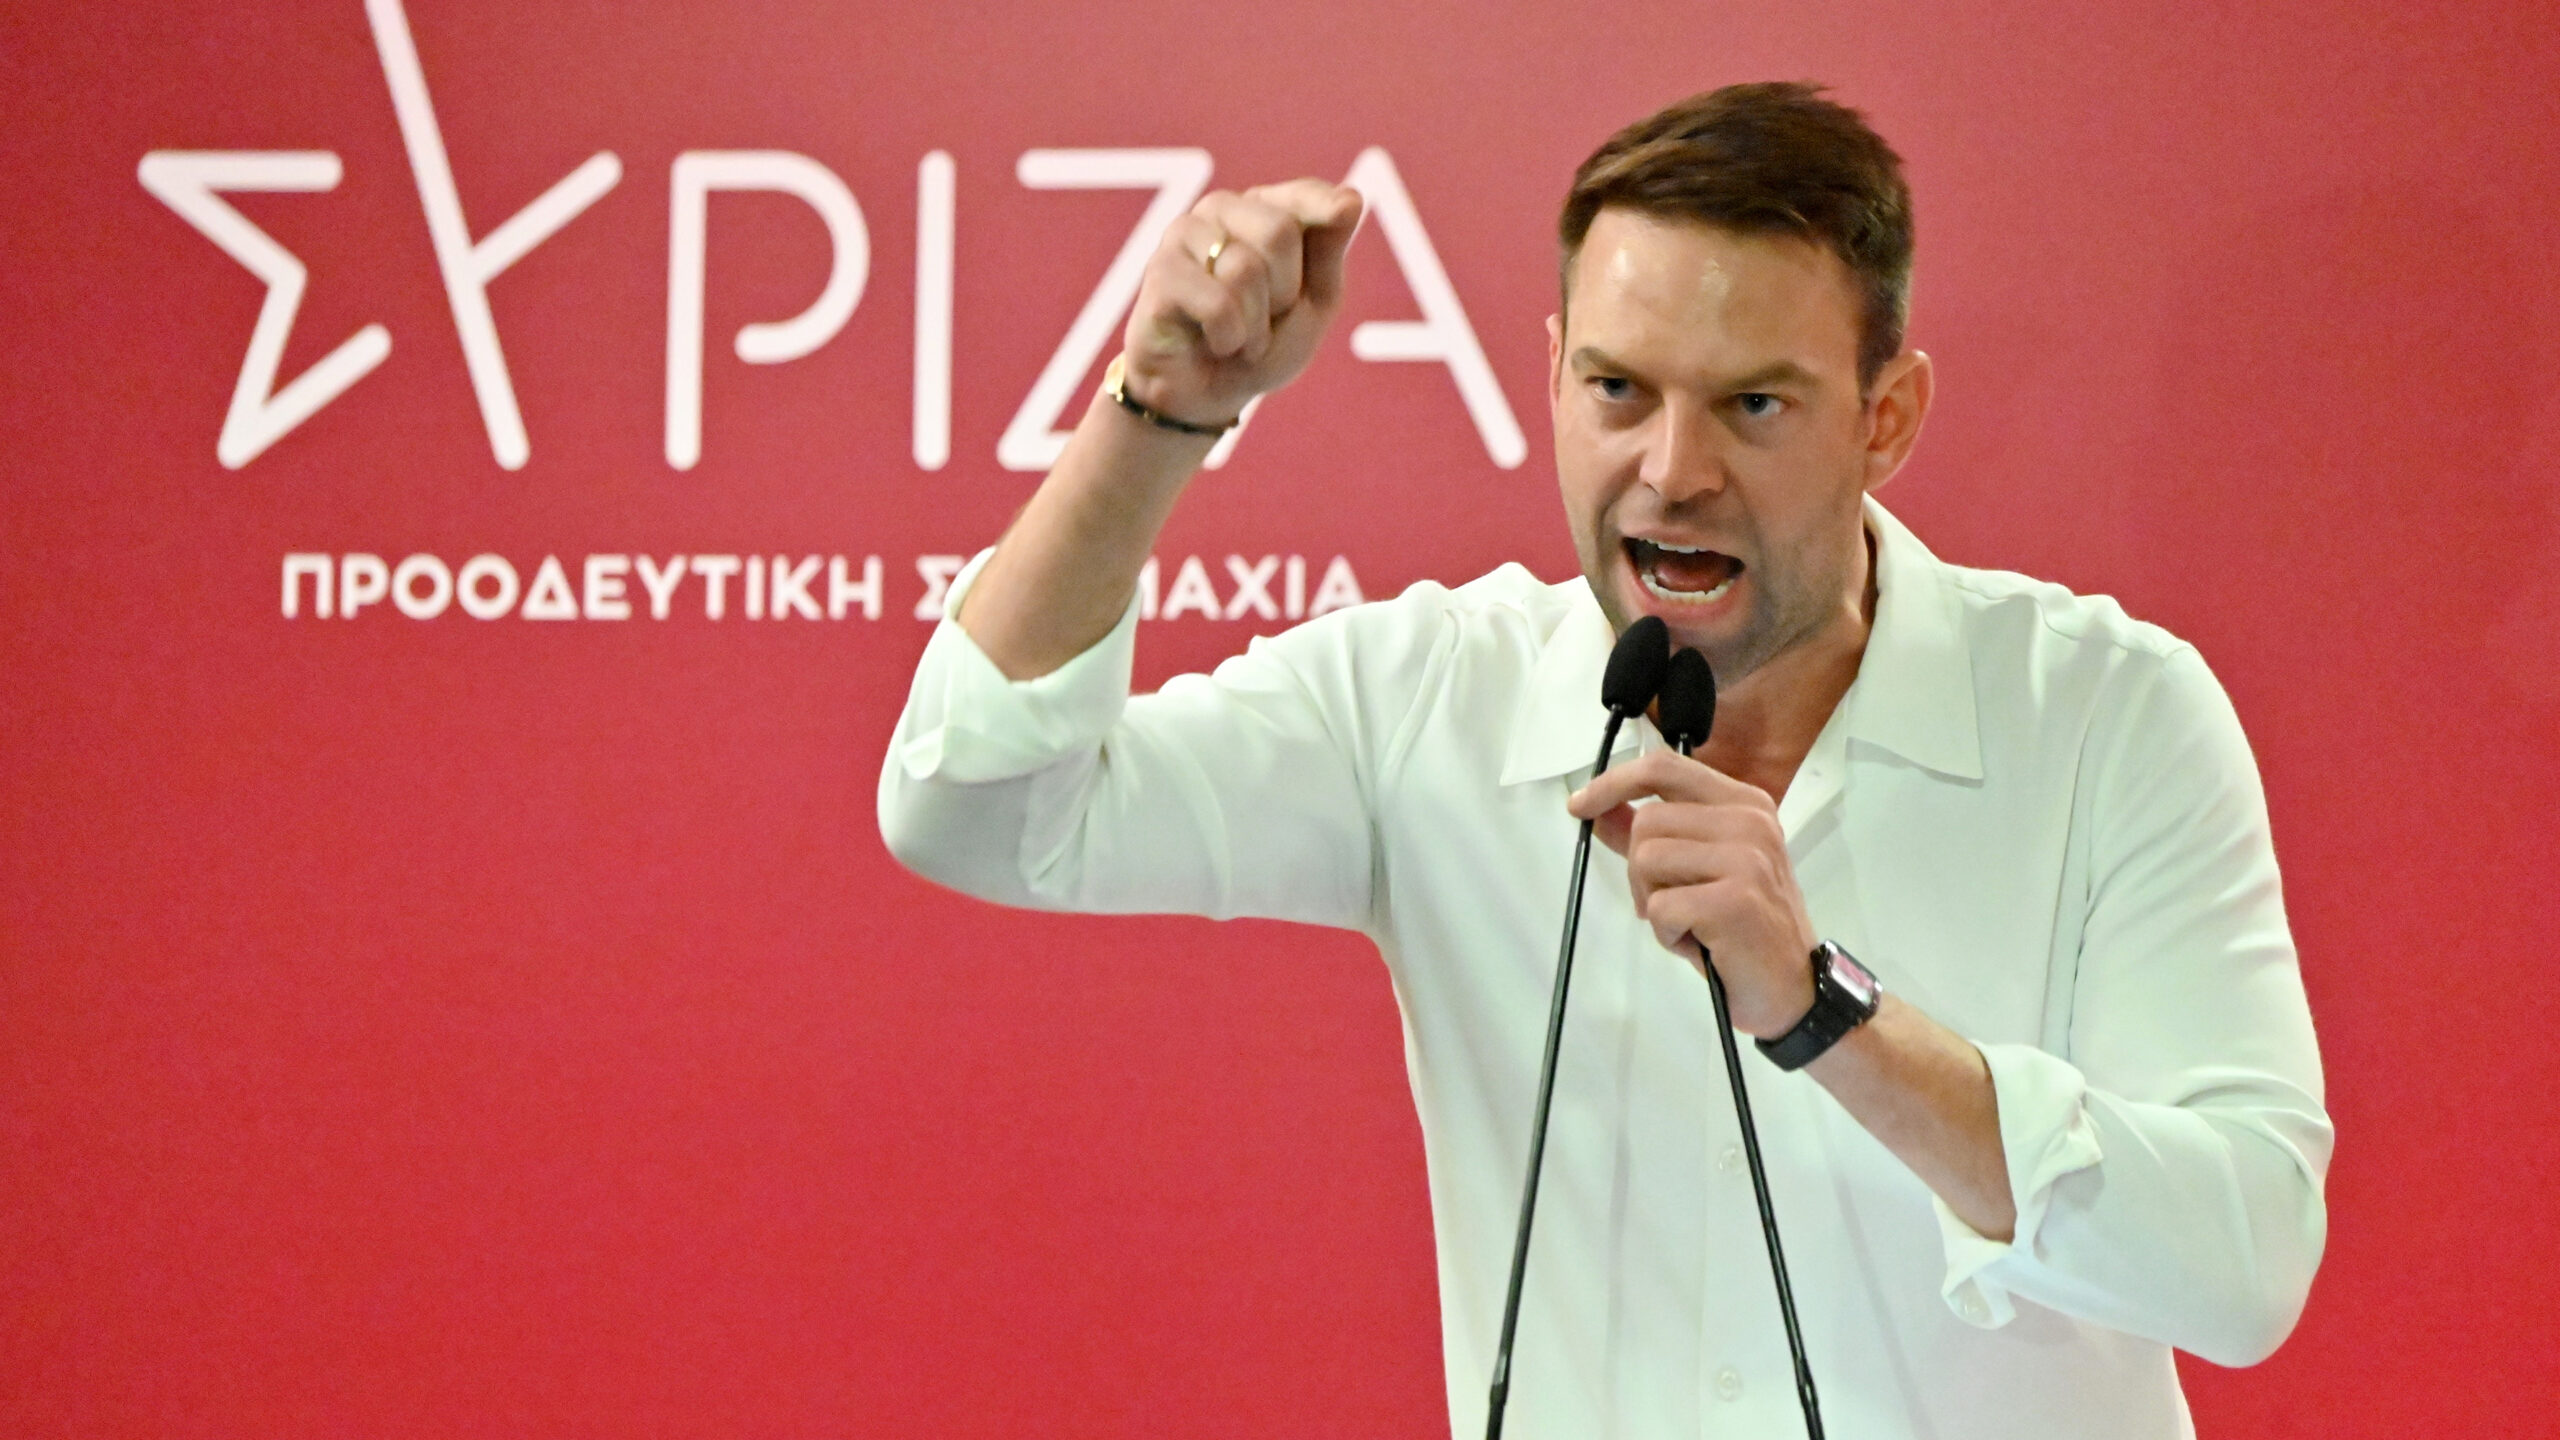 Σ.Κασσελάκης: «Πρώτος και κύριος στόχος μας είναι ο ΣΥΡΙΖΑ ΠΣ να νικήσει στις επόμενες εθνικές εκλογές»